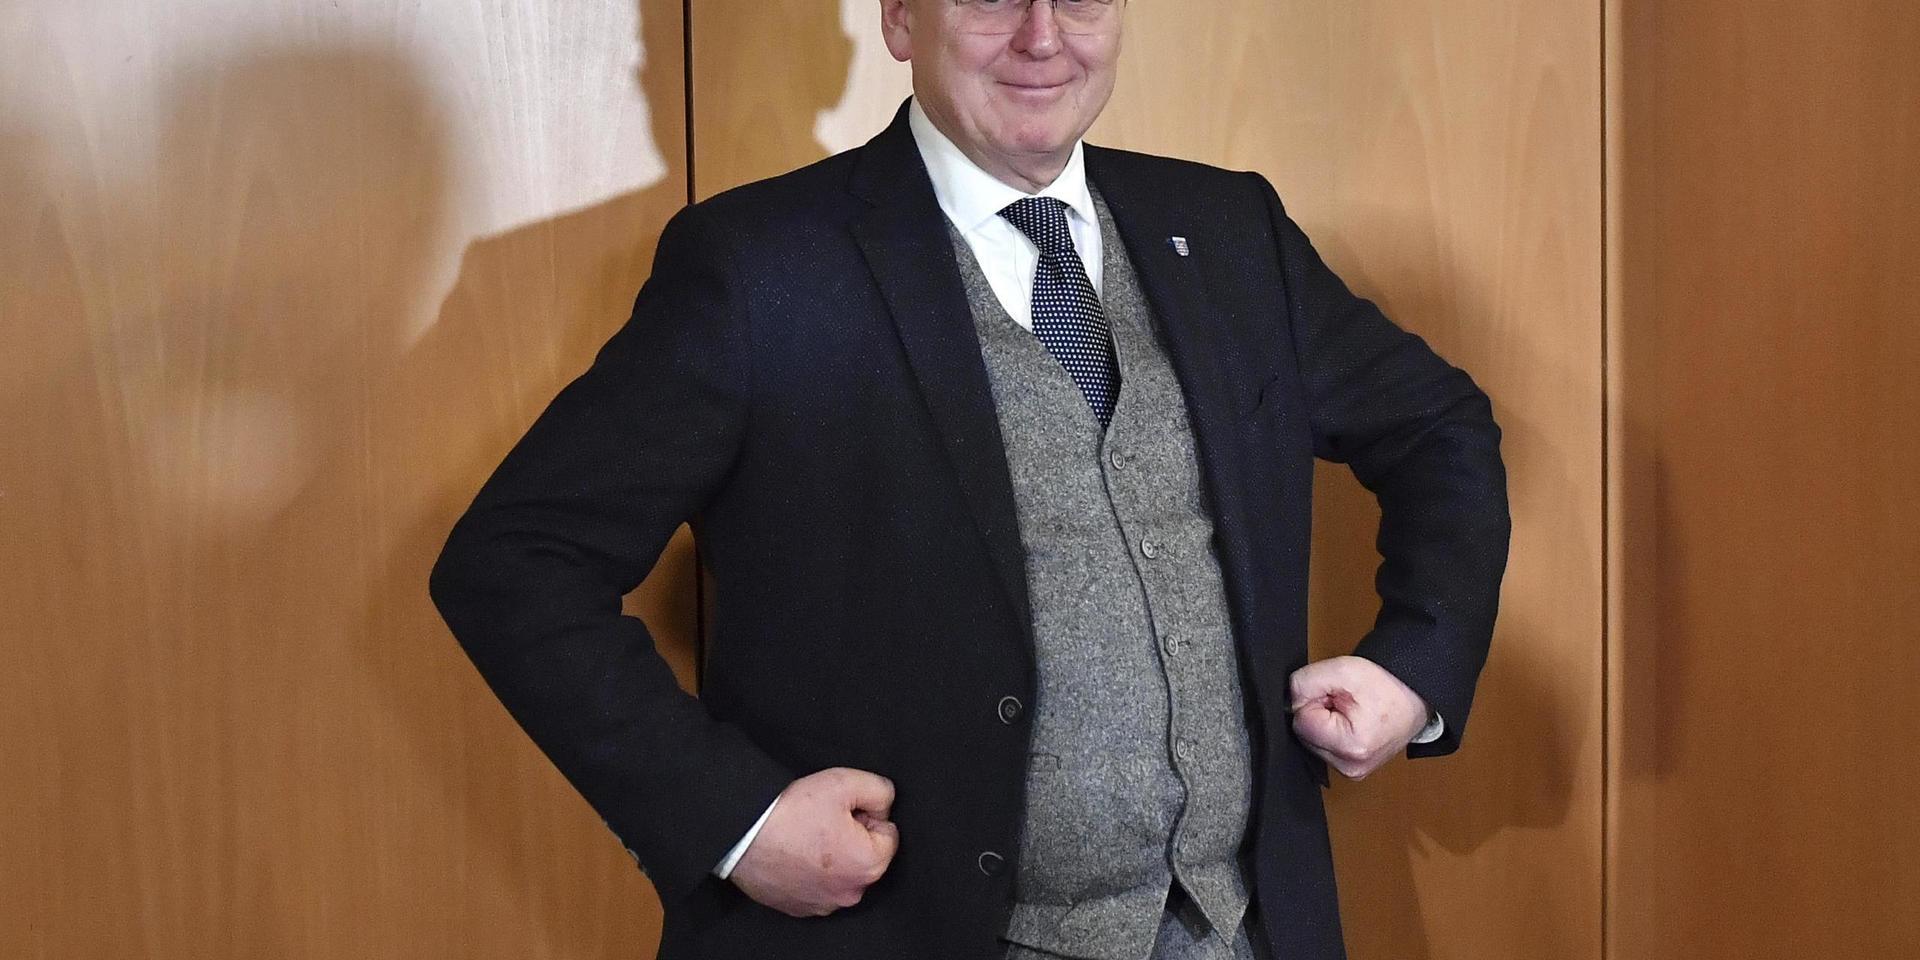 Vänstermannen Bodo Ramelow ser ut att få nytt förtroende som regeringschef i Thüringen, när CDU väljer ny väg. Här ler han, en stund före tillkännagivandet av en bred kompromiss mellan flera partier.